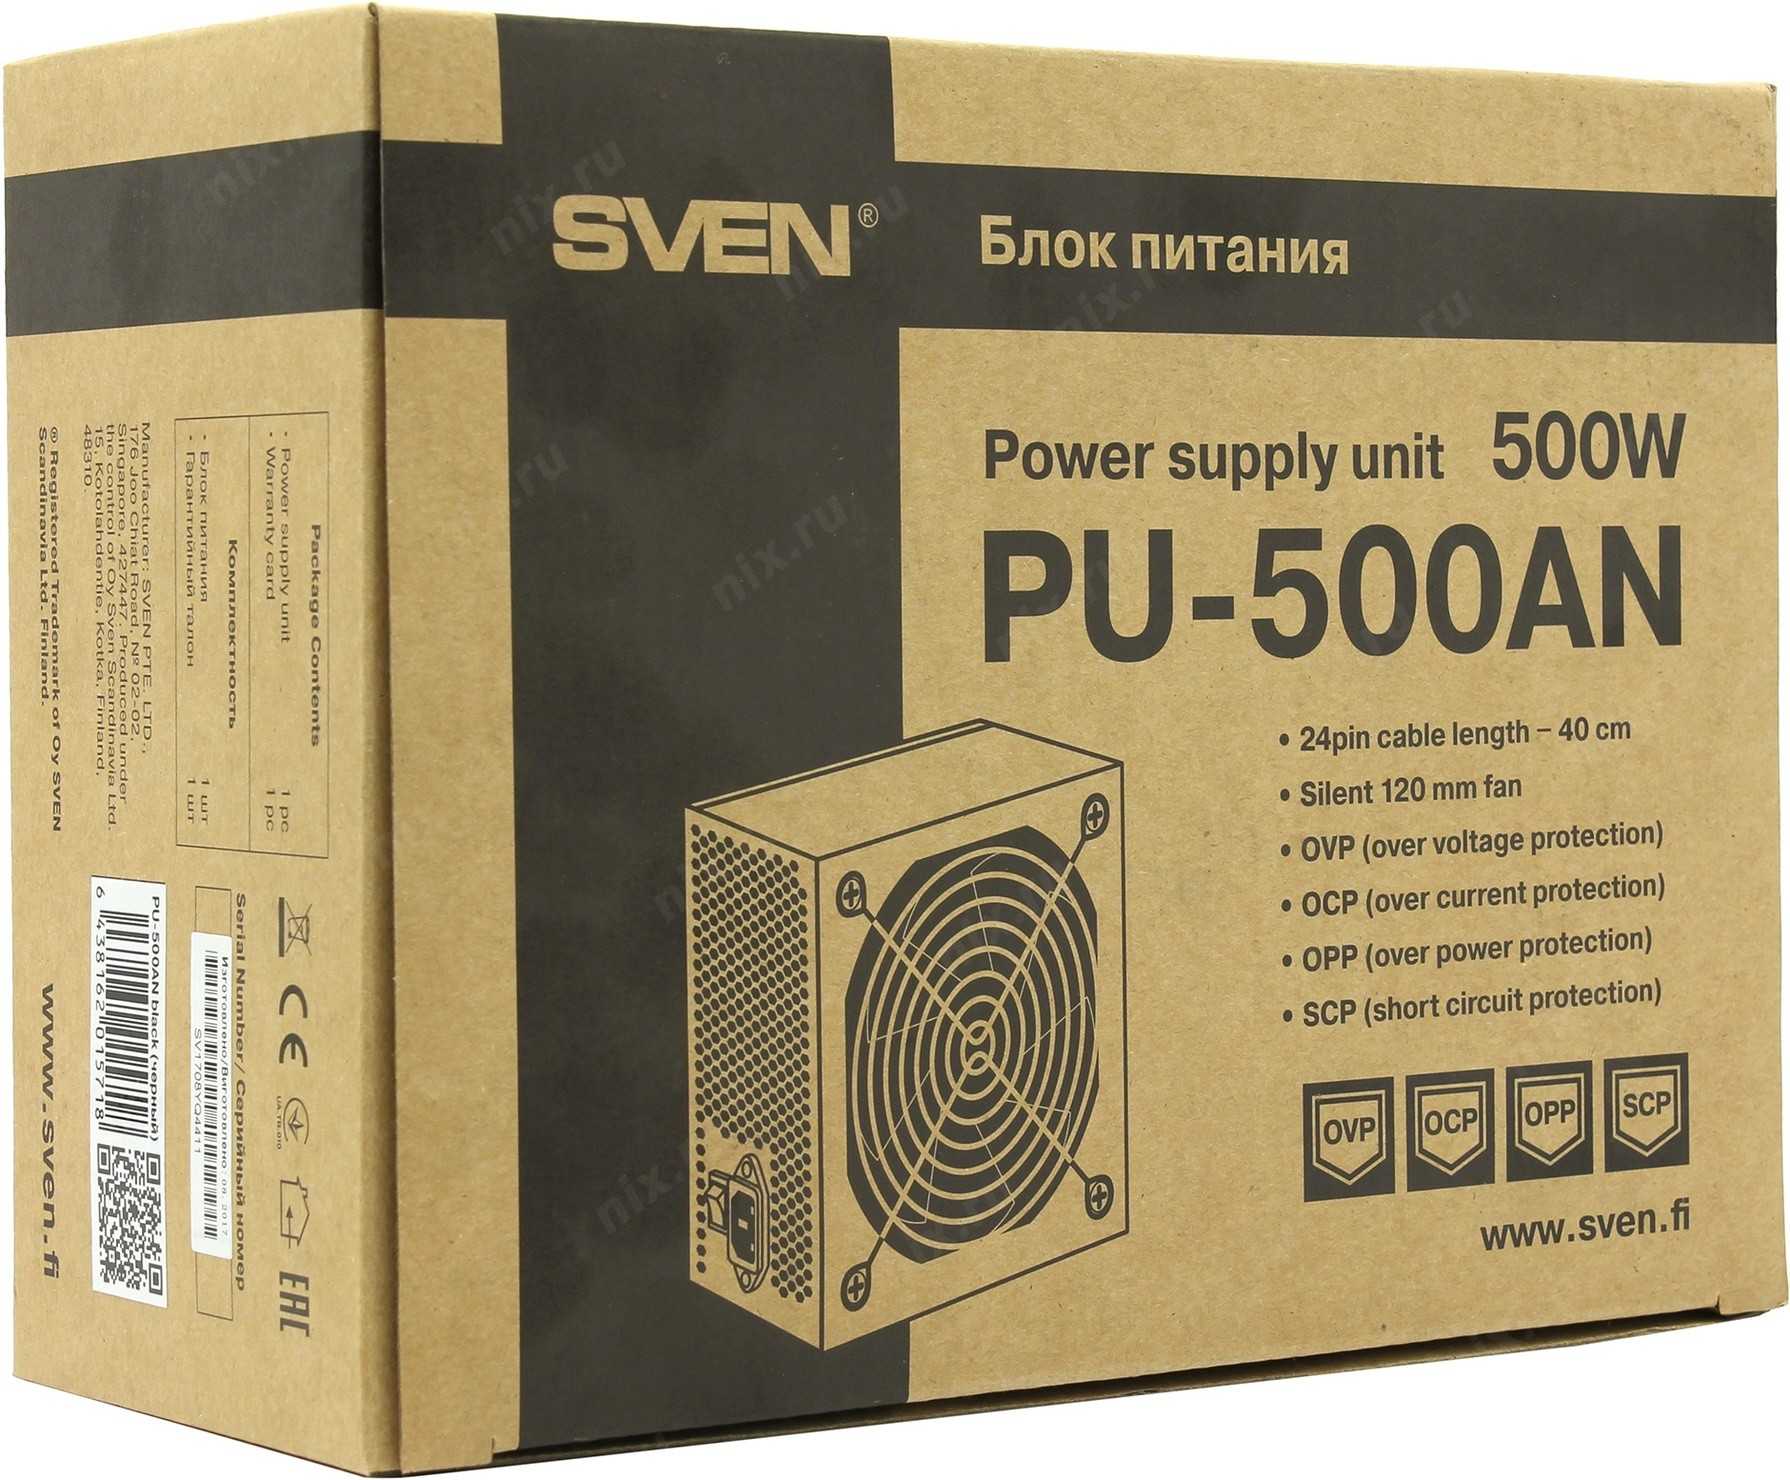 SVEN RT-500 - короткий но максимально информативный обзор Для большего удобства добавлены характеристики отзывы и видео